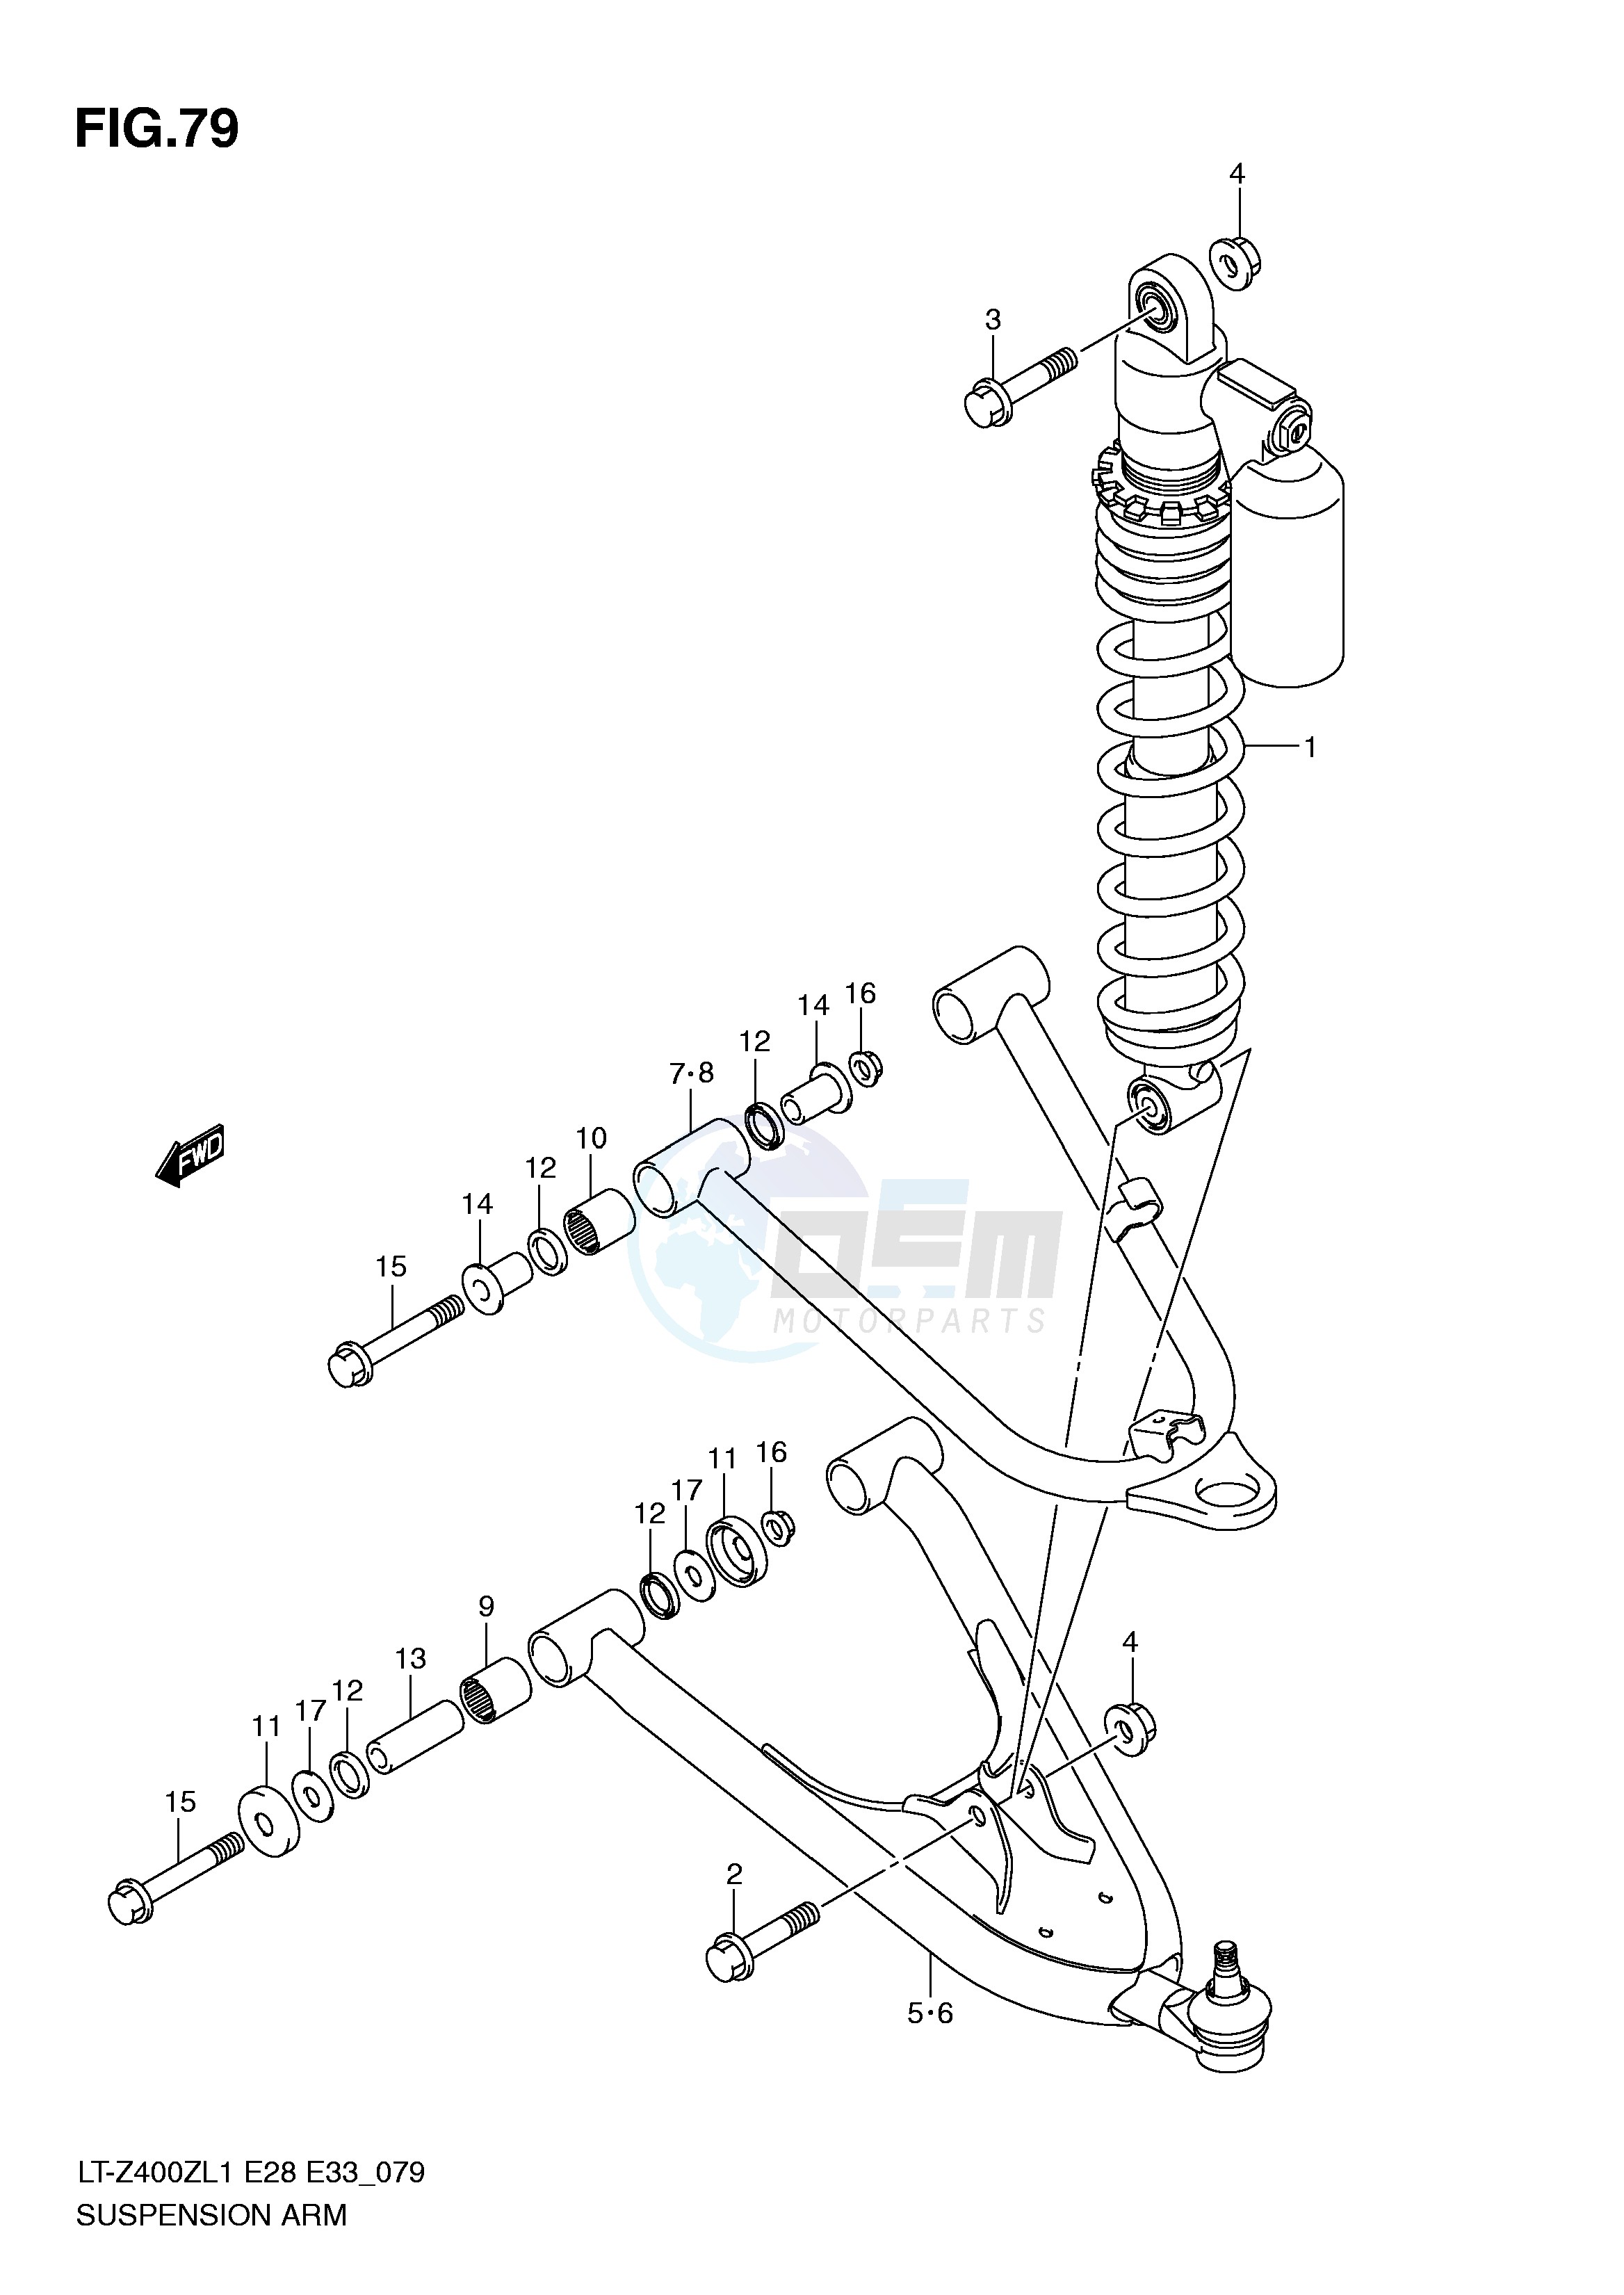 SUSPENSION ARM (LT-Z400ZL1 E28) image